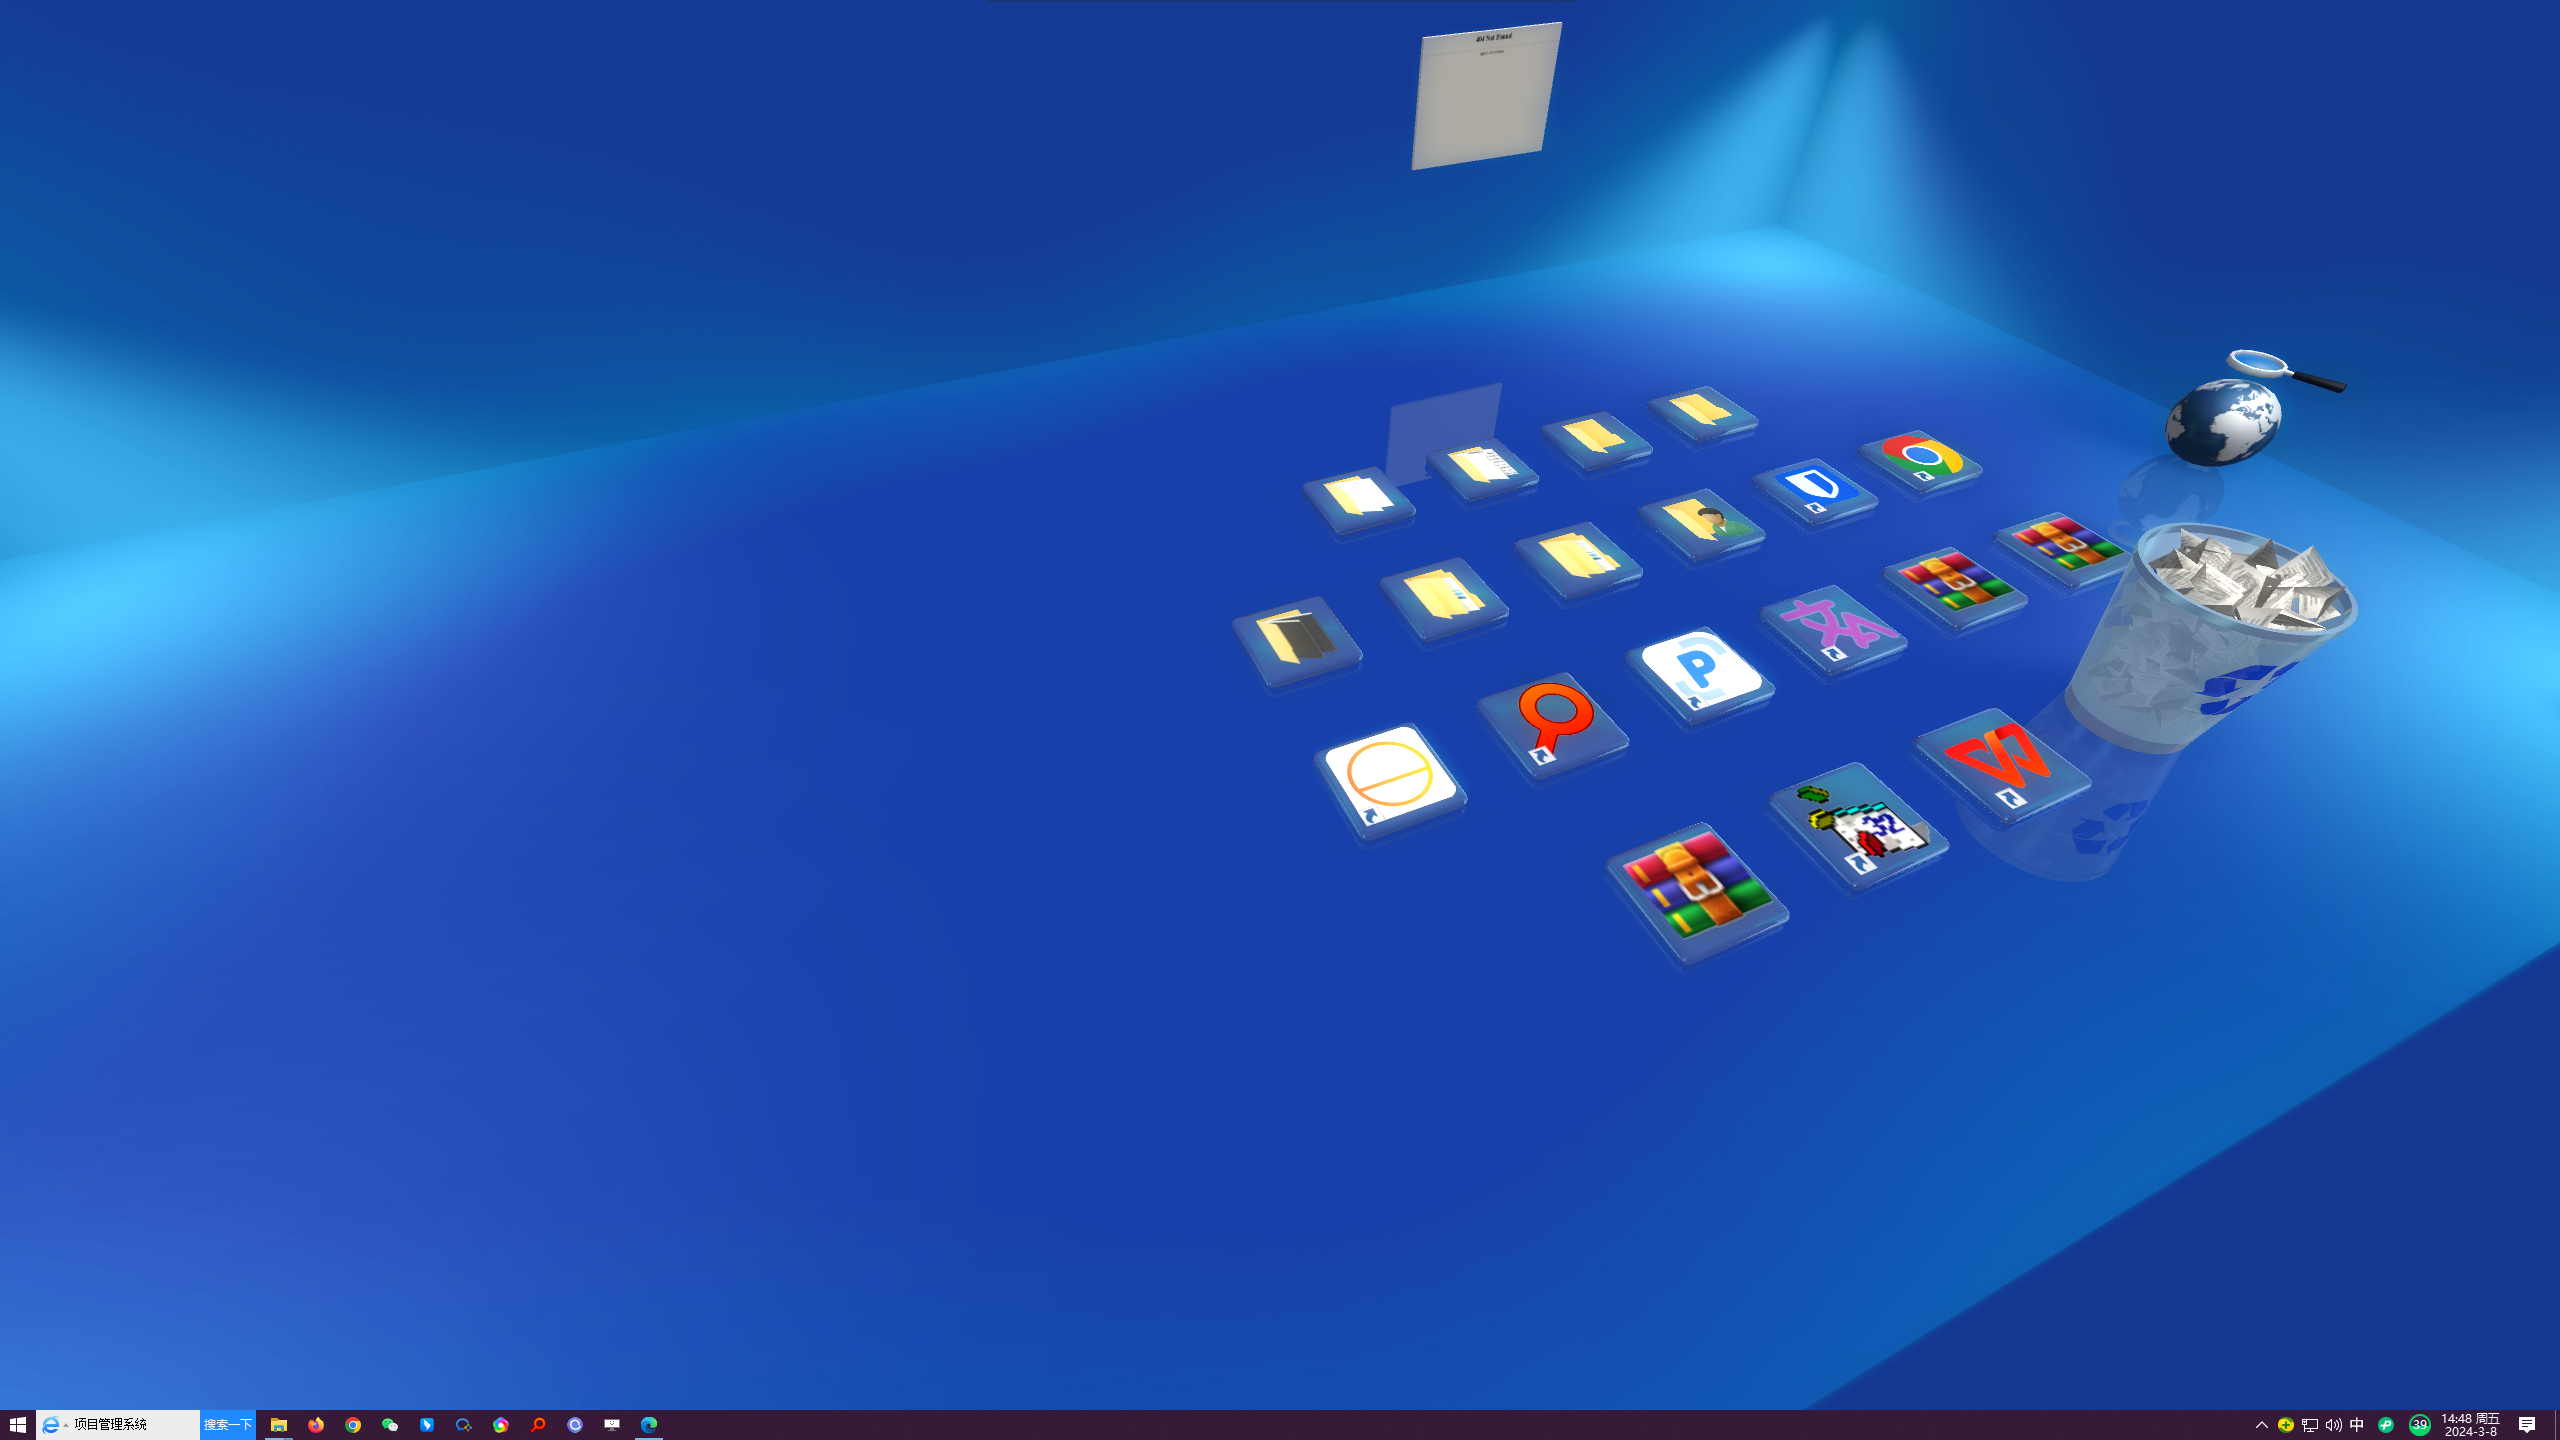 Real Desktop V2.08 3D 桌面美化的工具软件